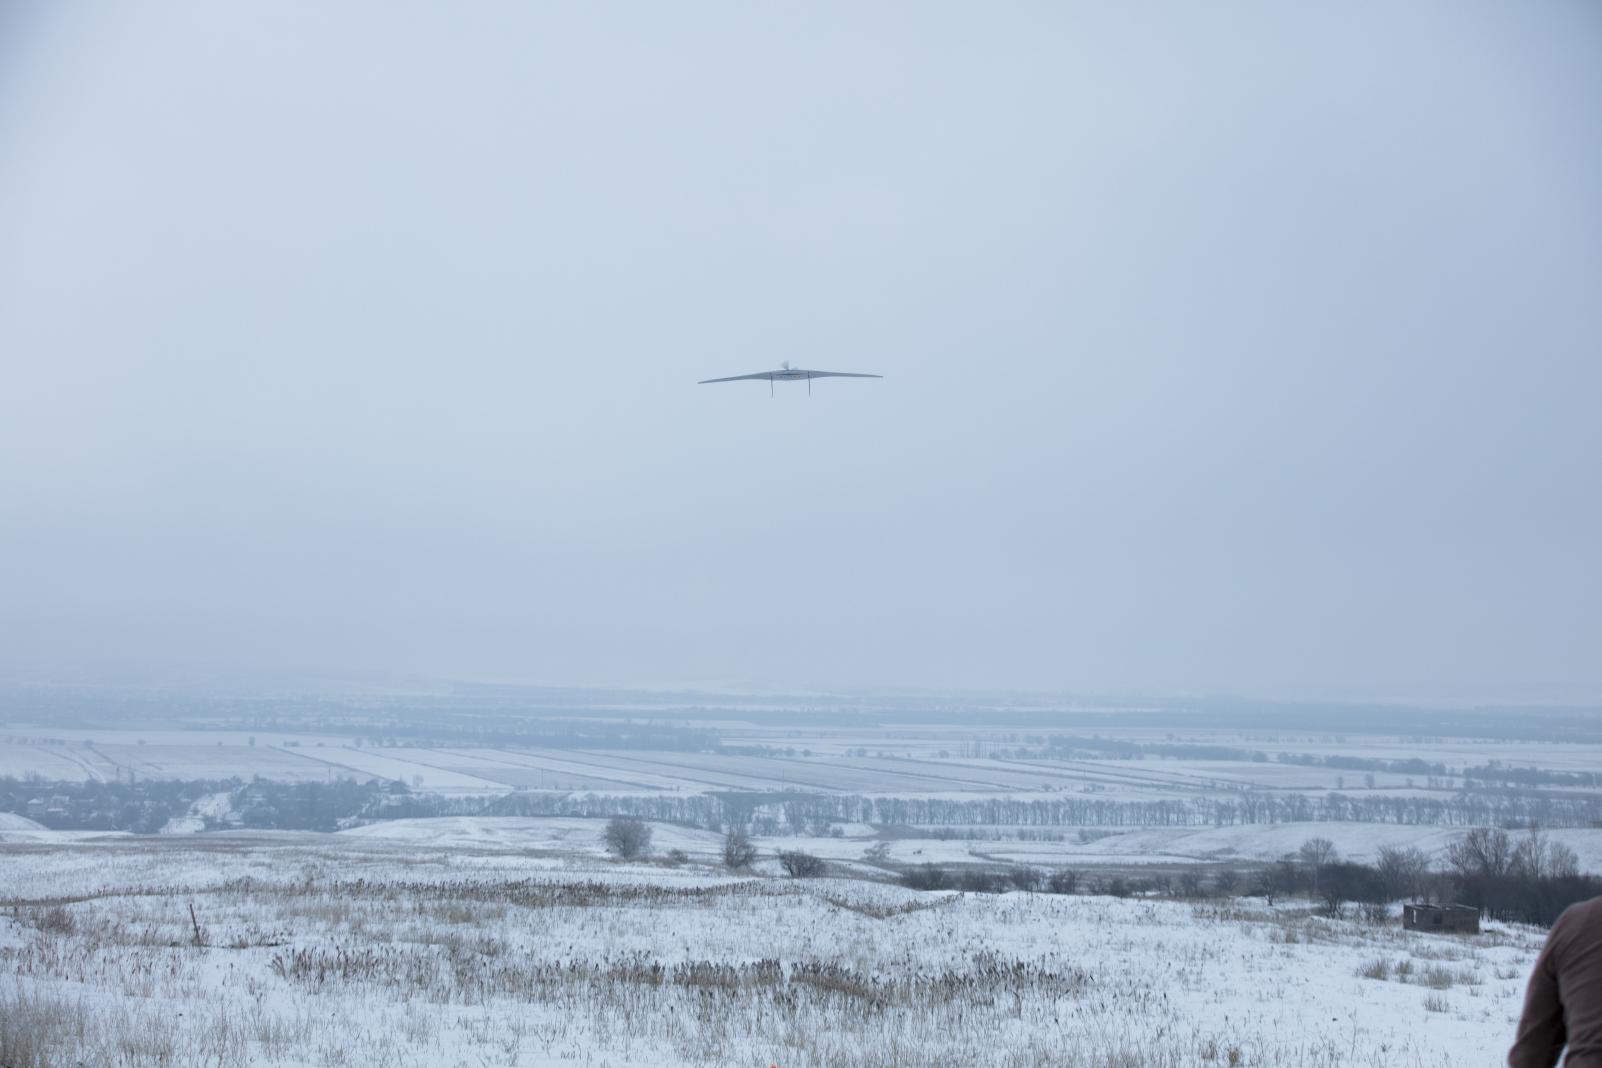 A drone taking flight in Kazakhstan